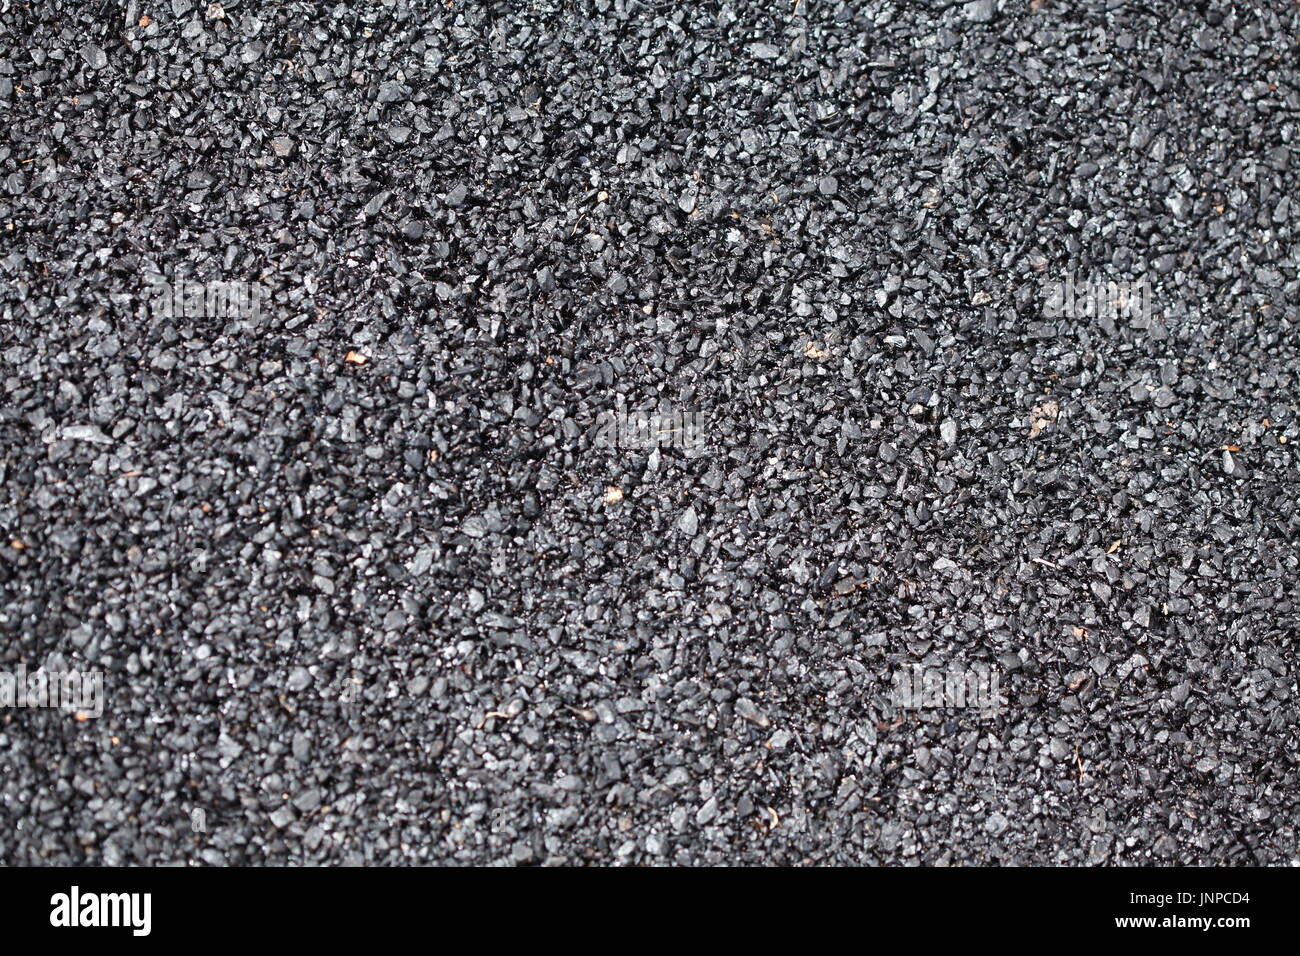 fresh black tar, street asphalt Stock Photo